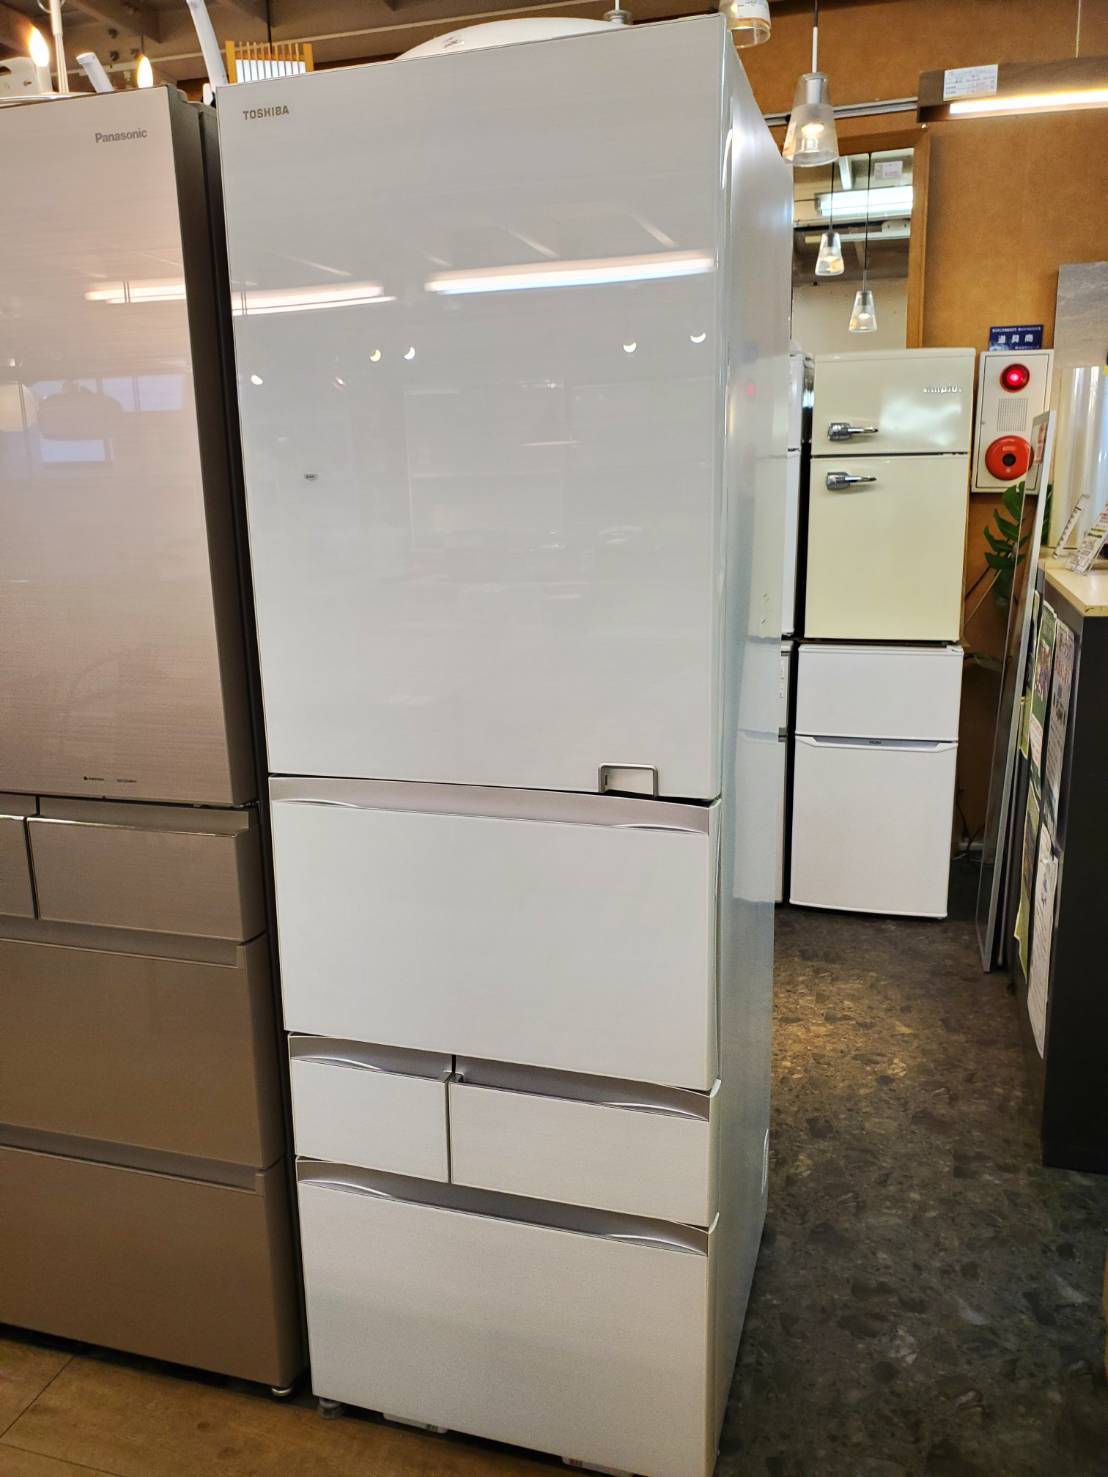 東芝 5ドア冷蔵庫 GR-C43G 自動製氷機付き - キッチン家電